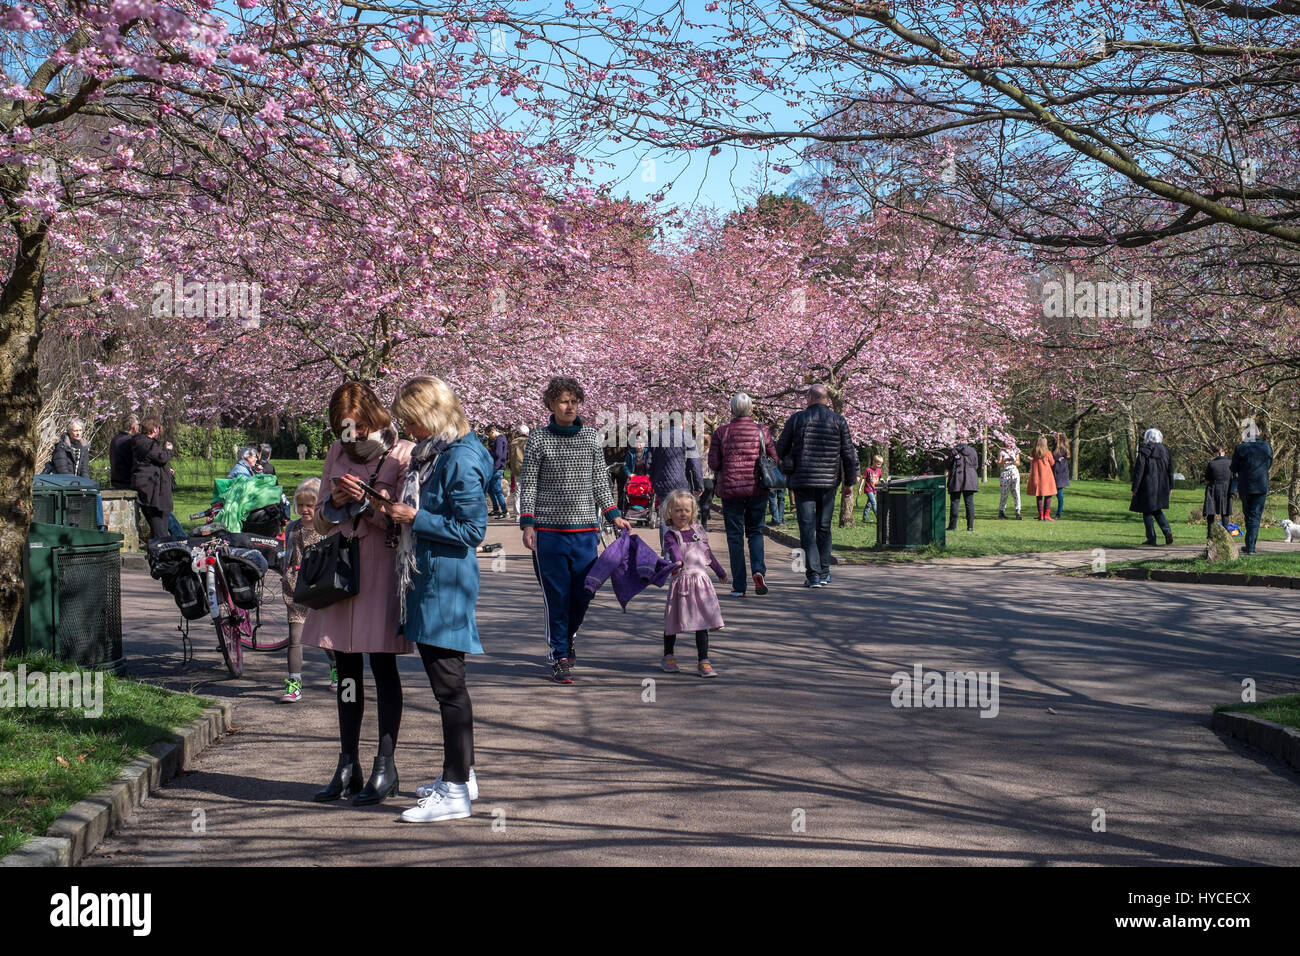 Frühling kommt in Dänemark. Einmal im Jahr strömen einheimische und Touristen in Bispebjerg Friedhof, Kopenhagen, um die Allee der rosa Kirschenbaum Blüten genießen. Stockfoto